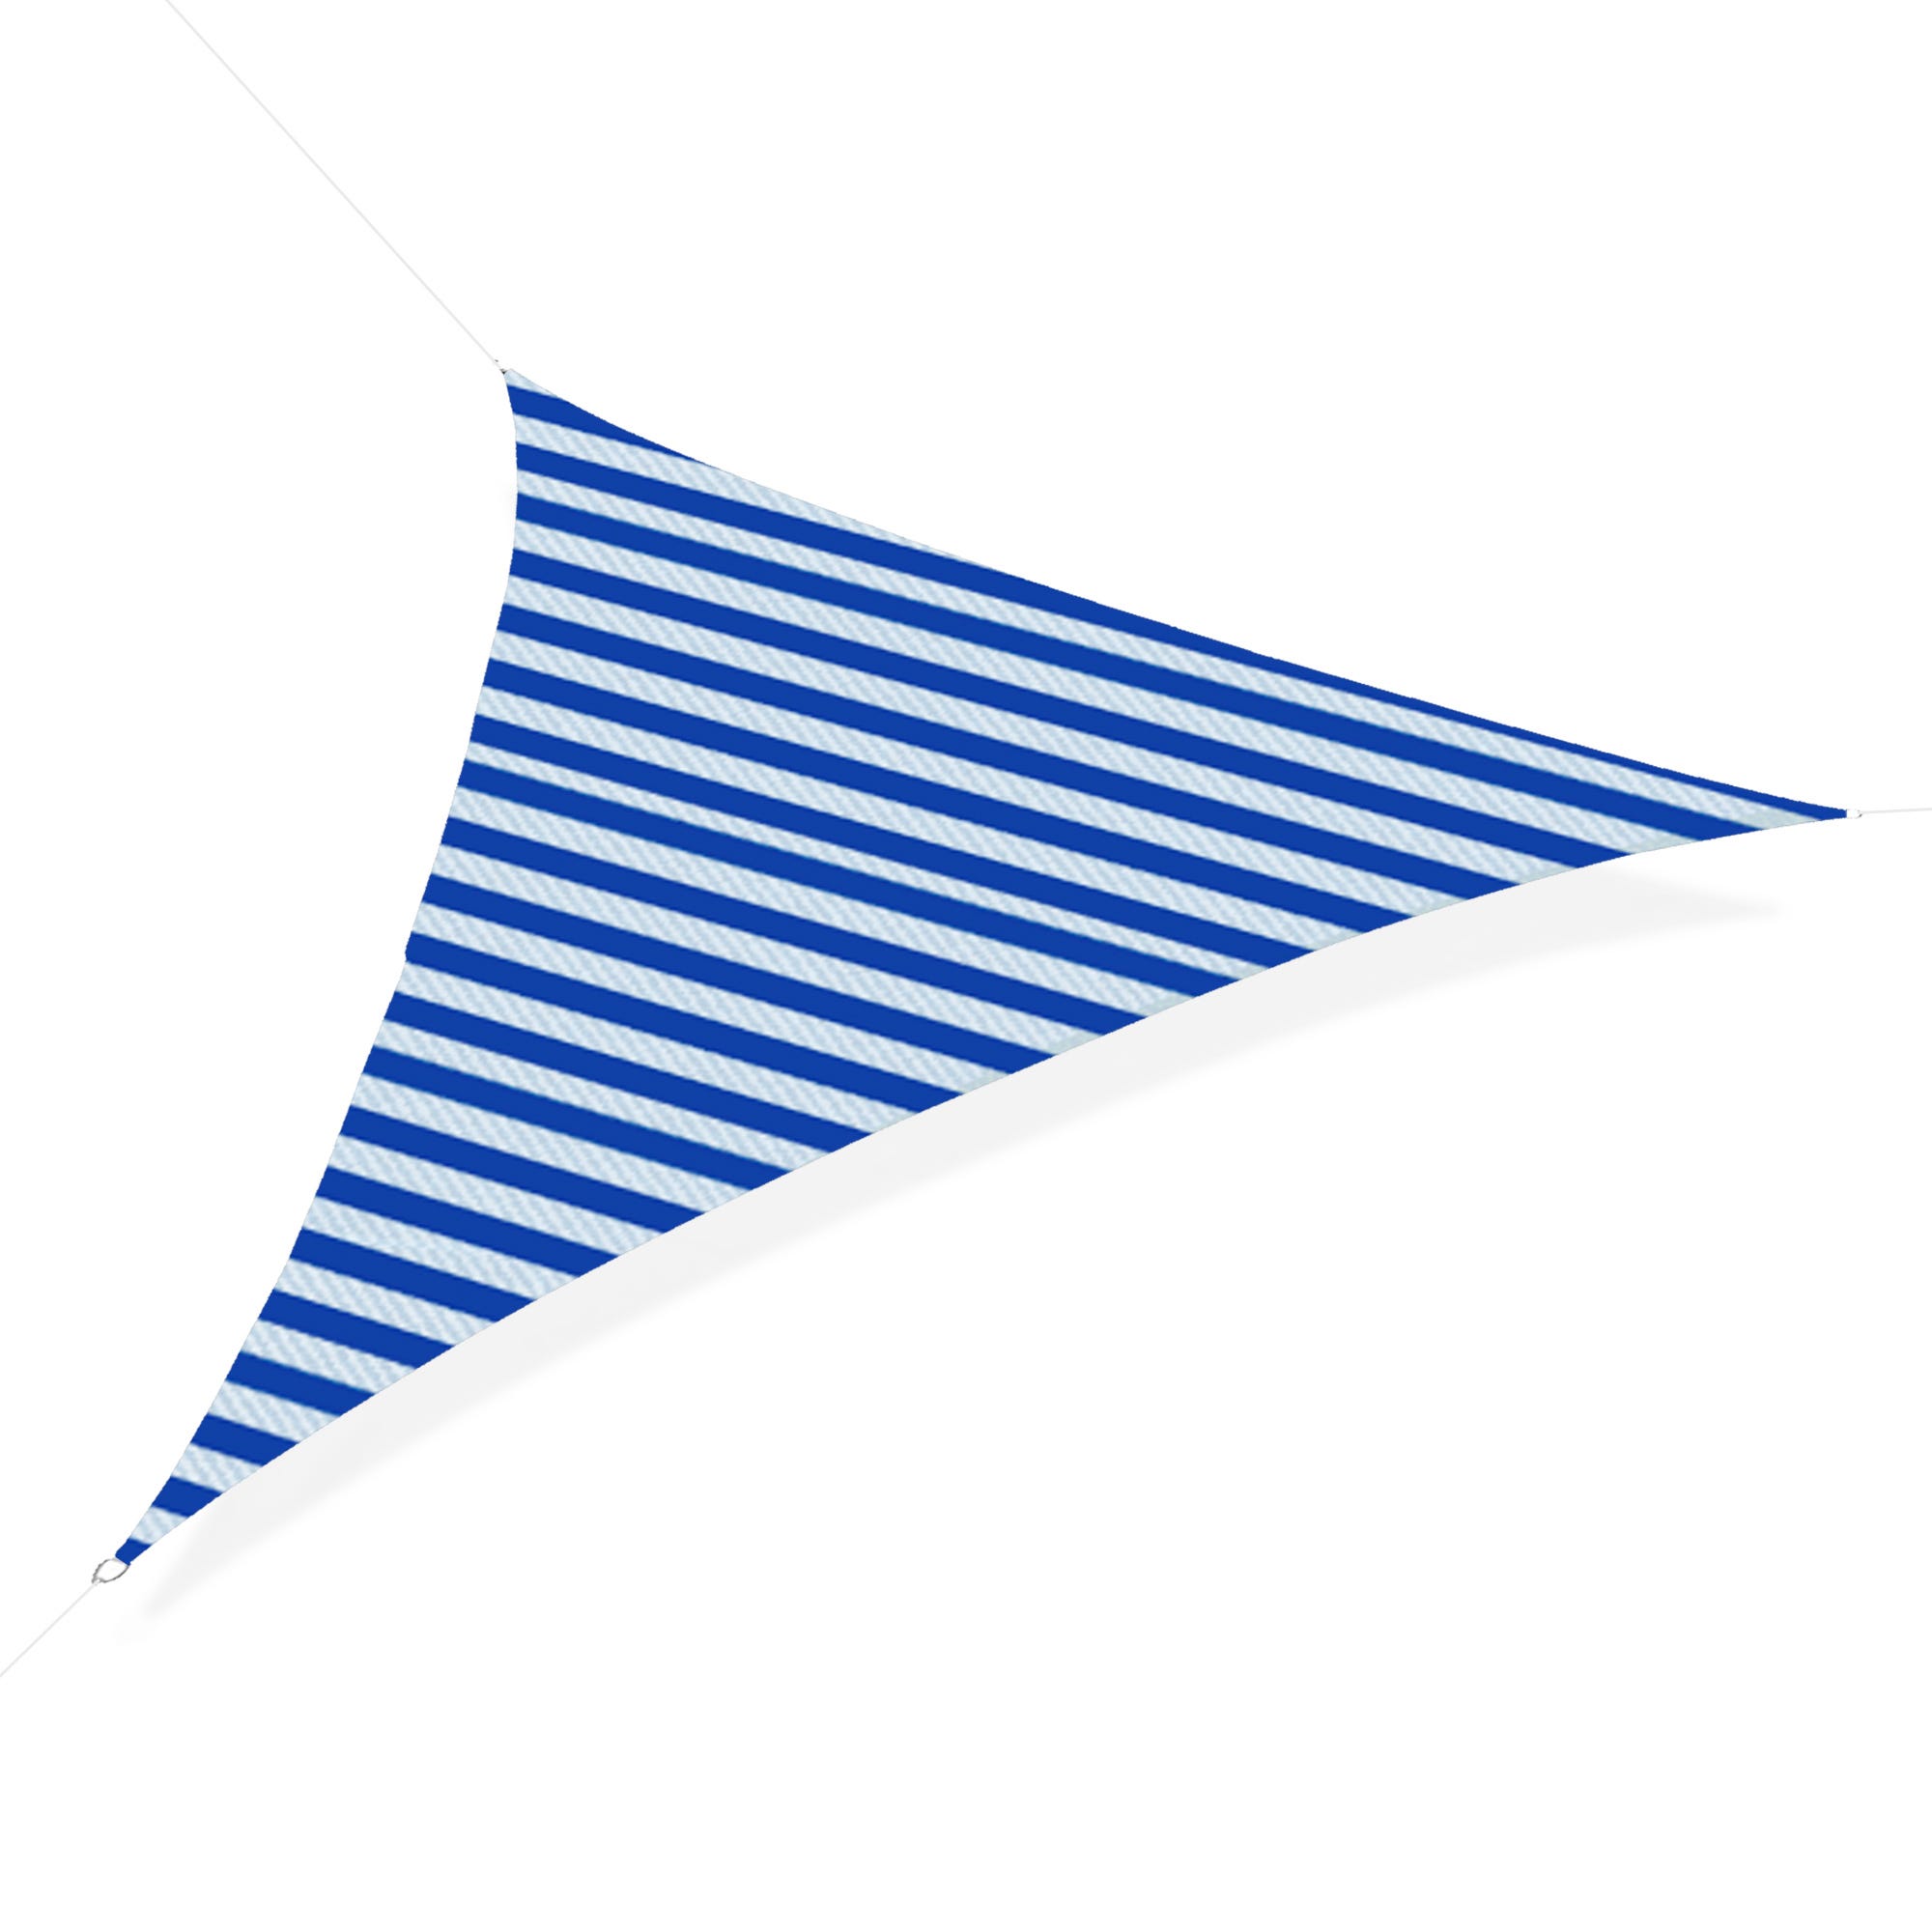 Vela ombreggiante microforata triangolare avana in poliestere tenda 5x5x5mt